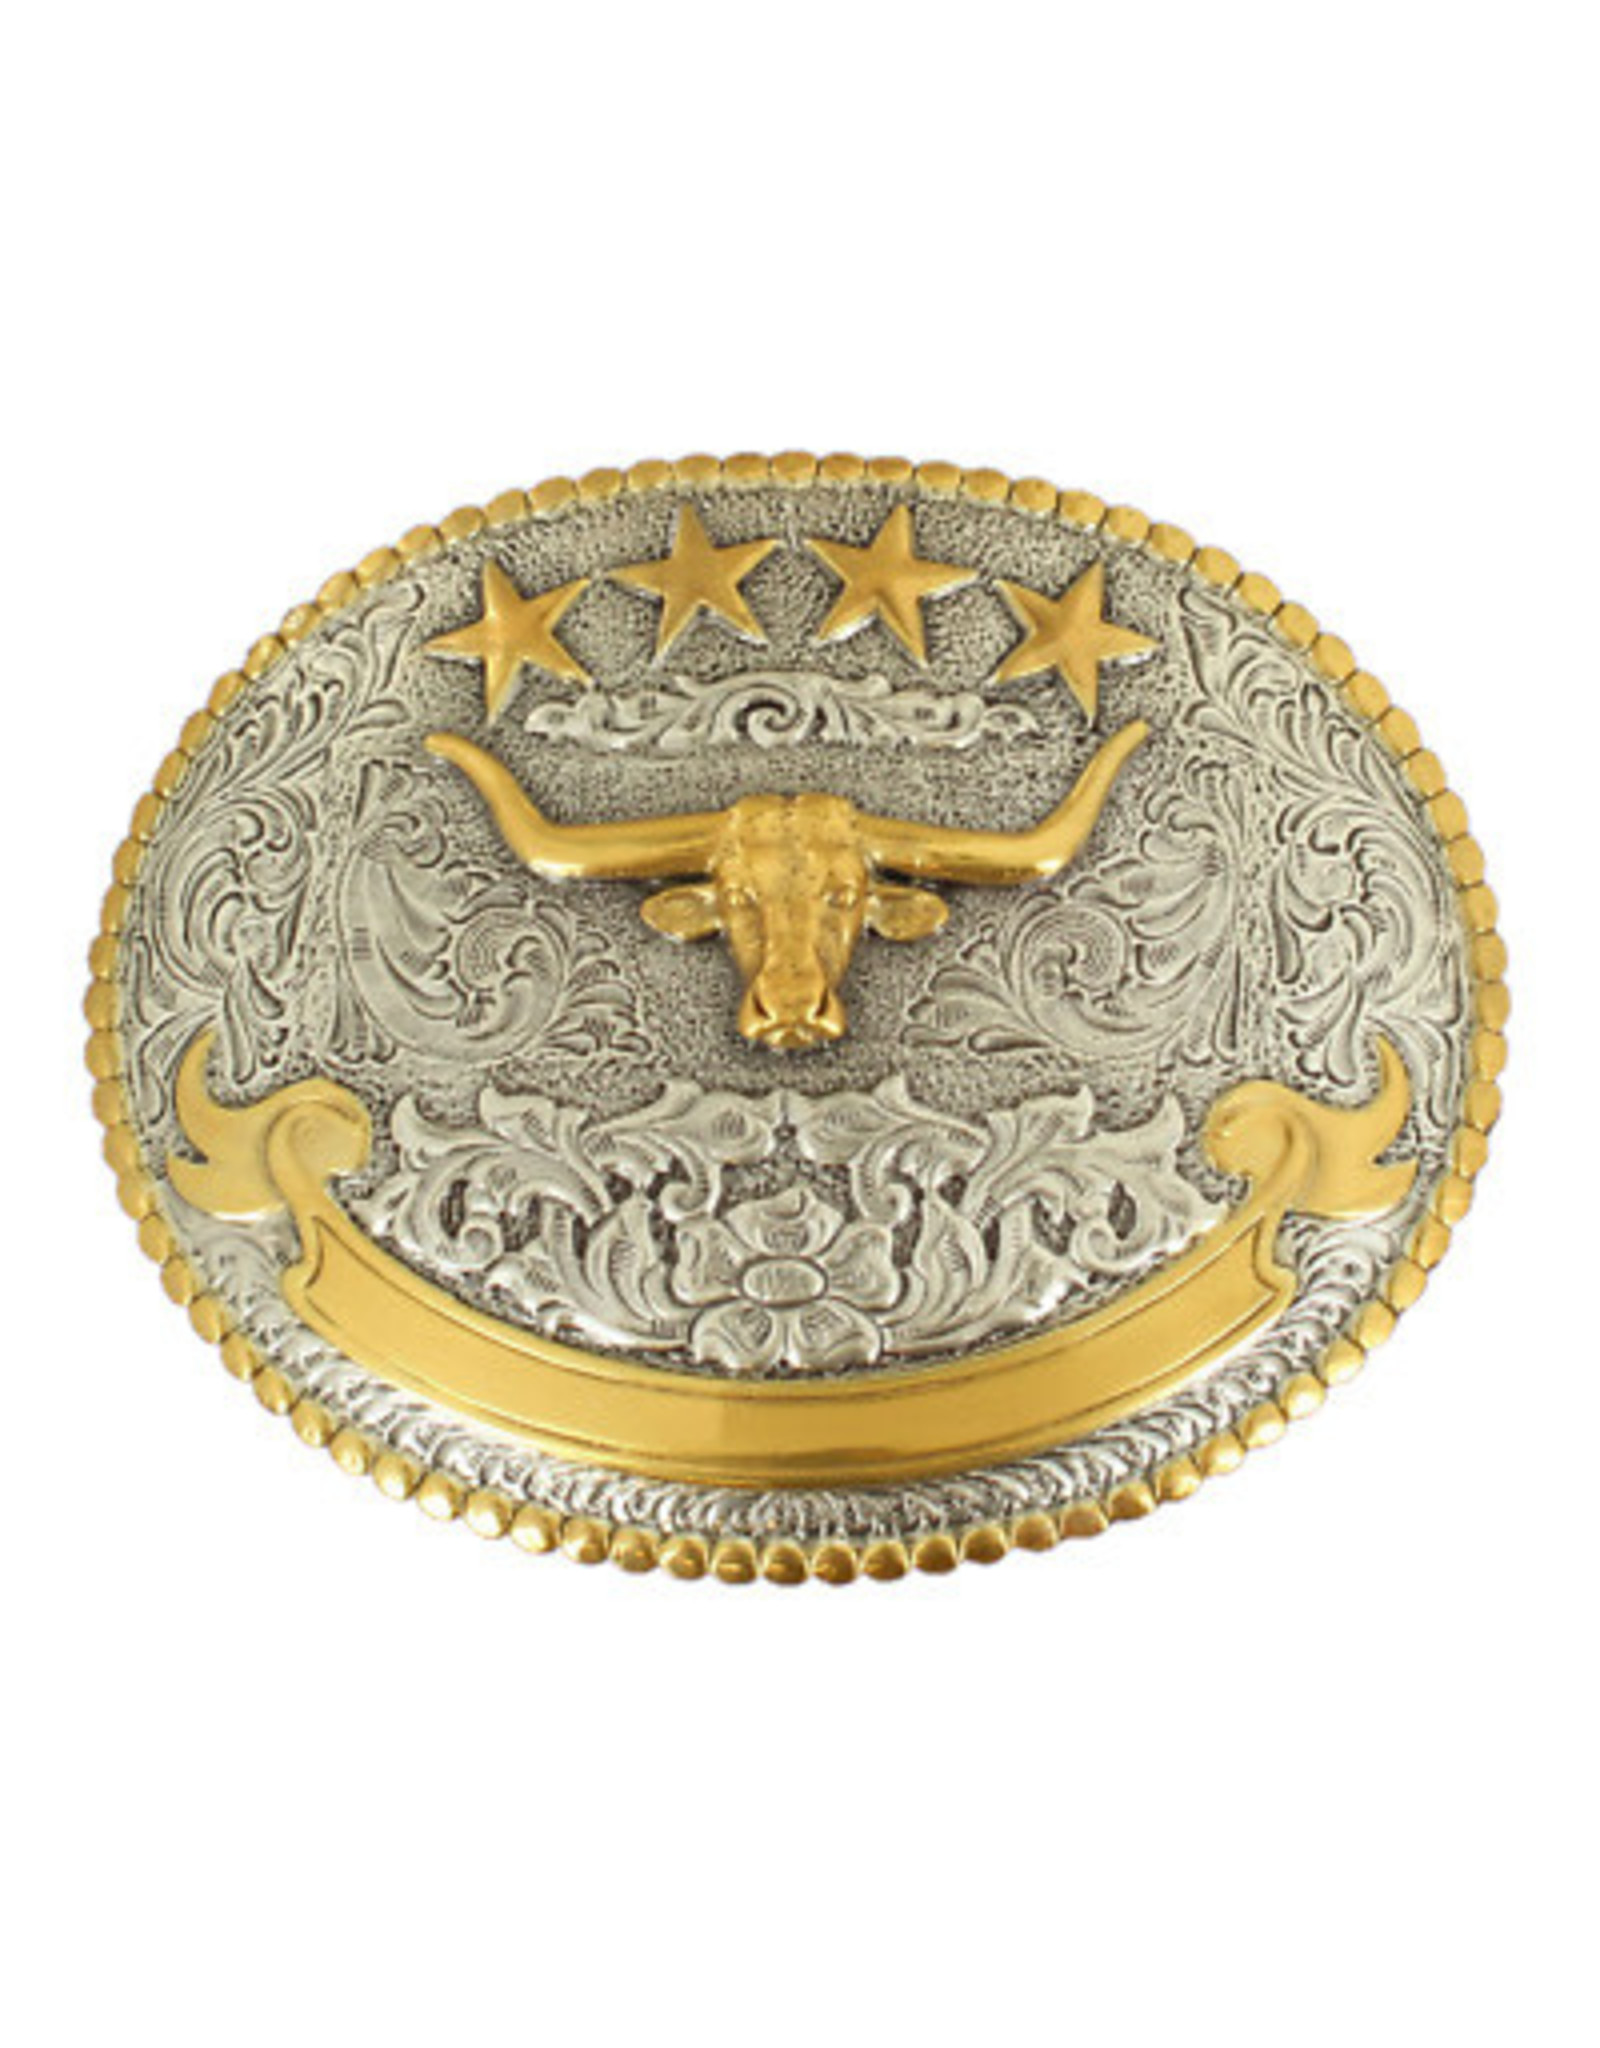 Nocona Large Steer Engraved 37401 Belt Buckle